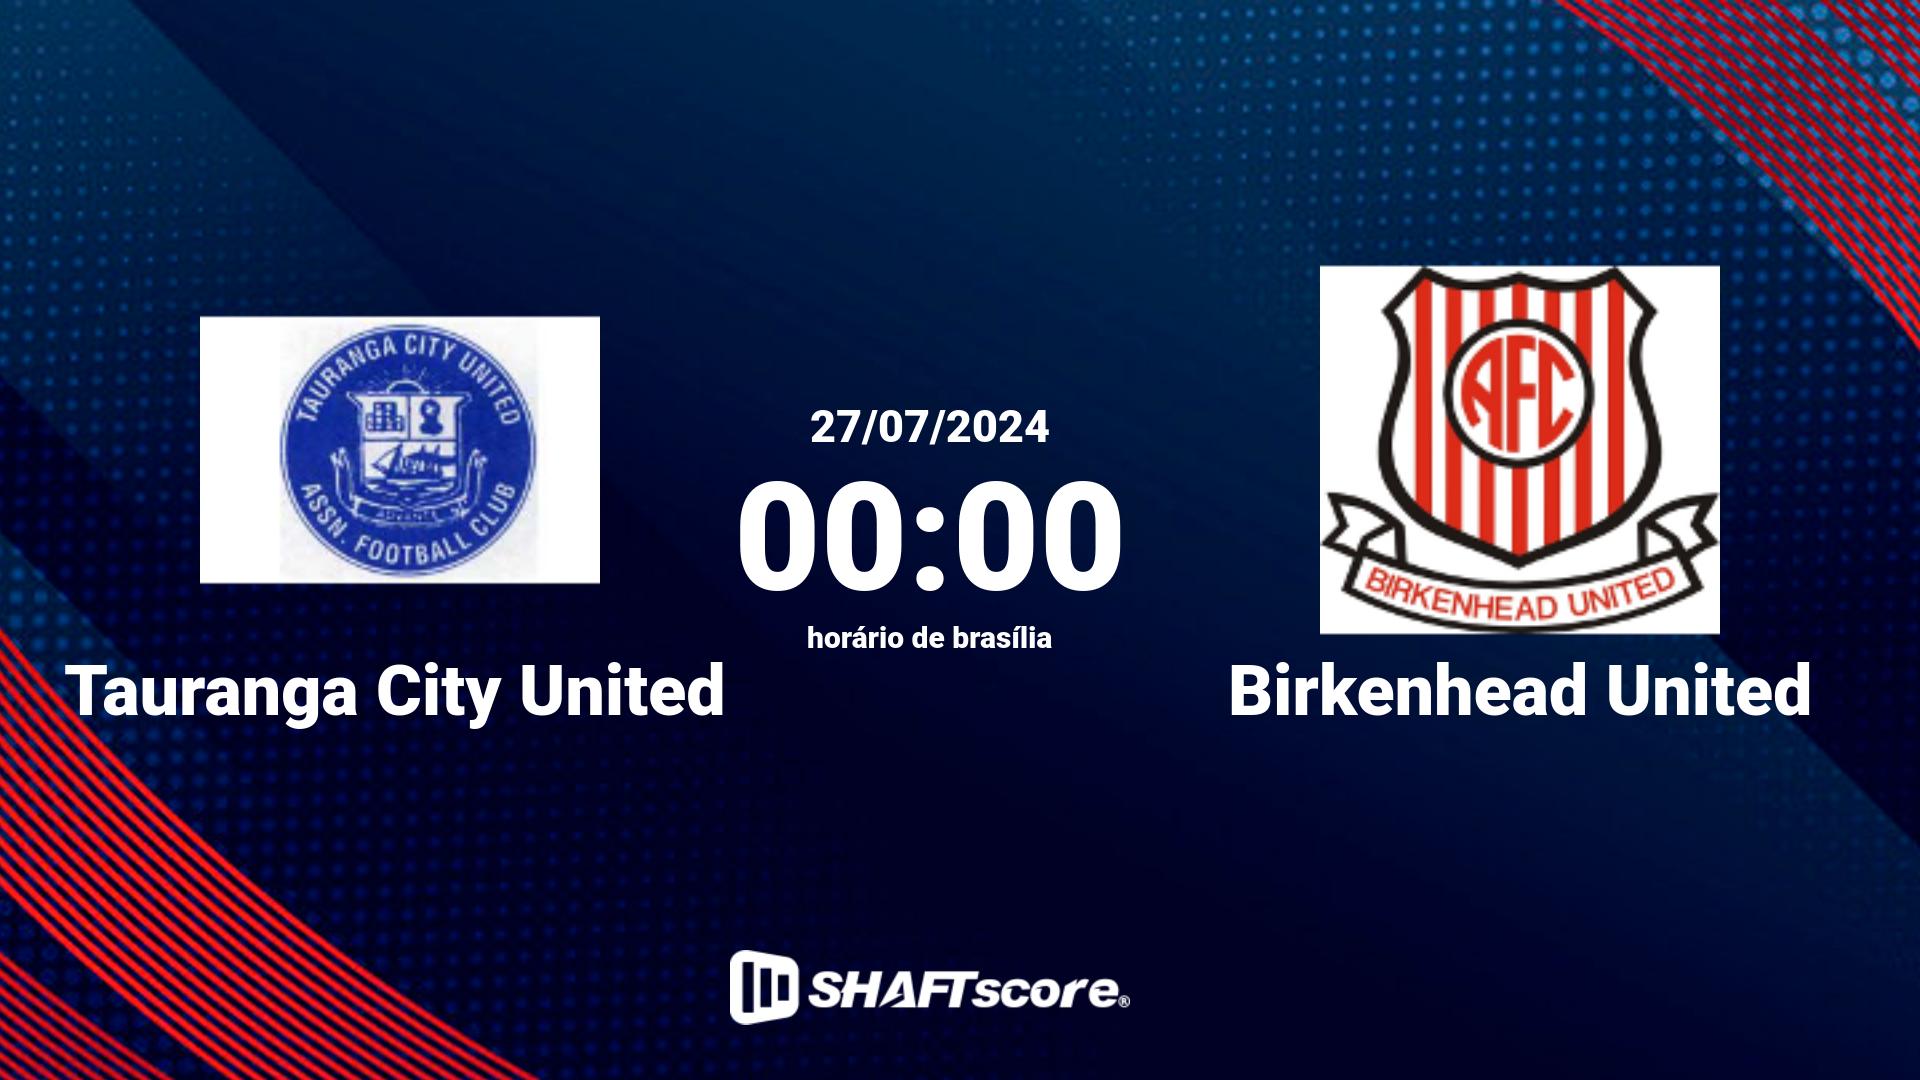 Estatísticas do jogo Tauranga City United vs Birkenhead United 27.07 00:00